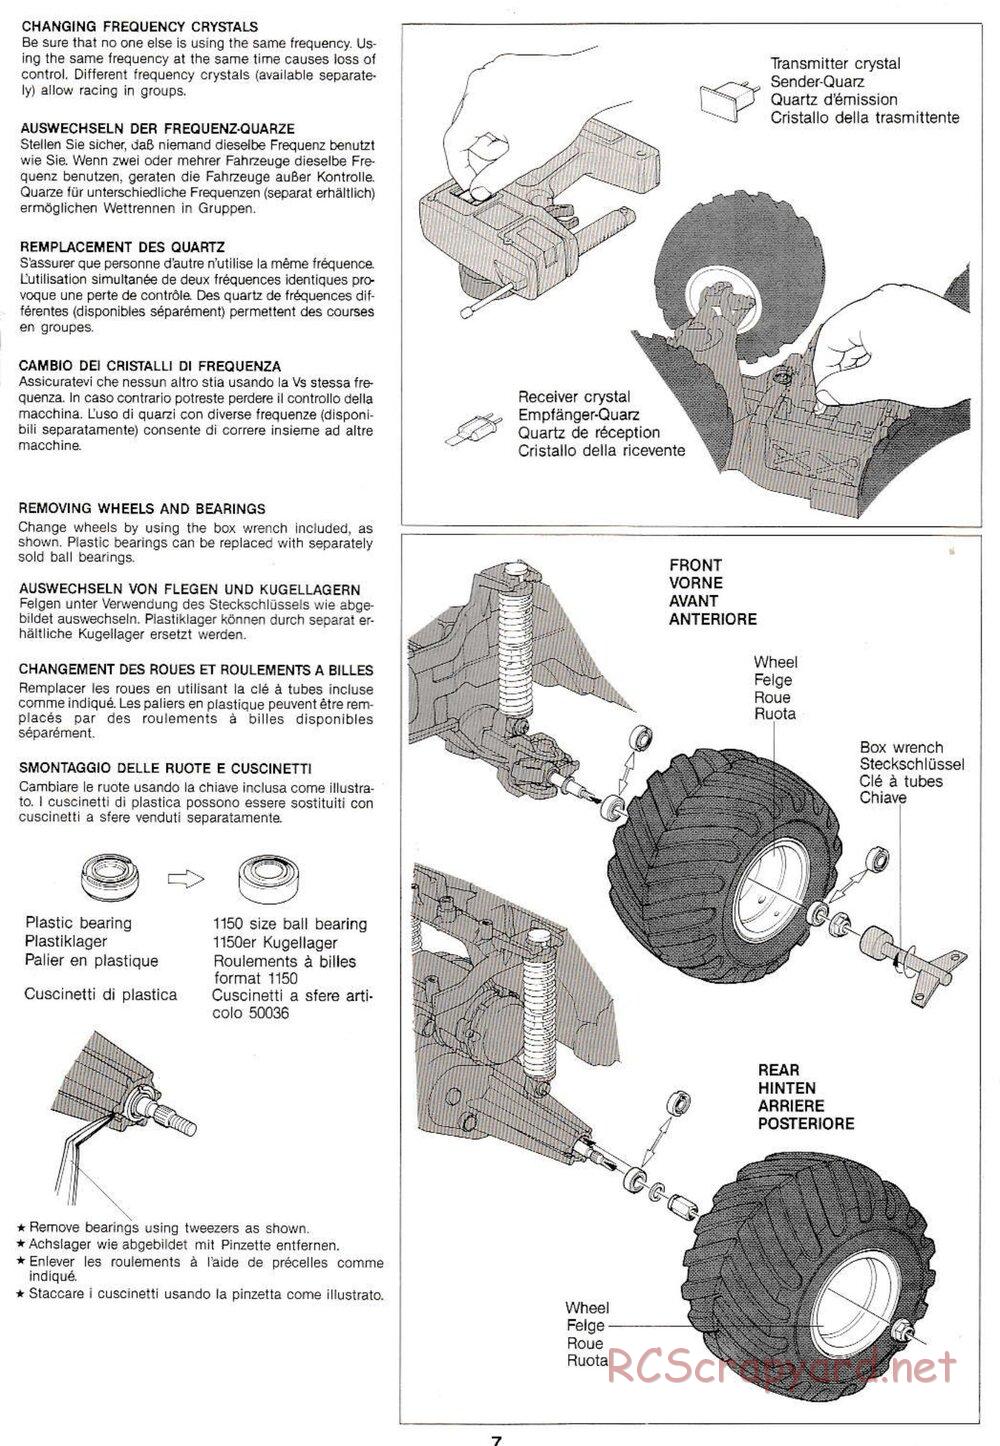 Tamiya - Monster Beetle QD Chassis - Manual - Page 7